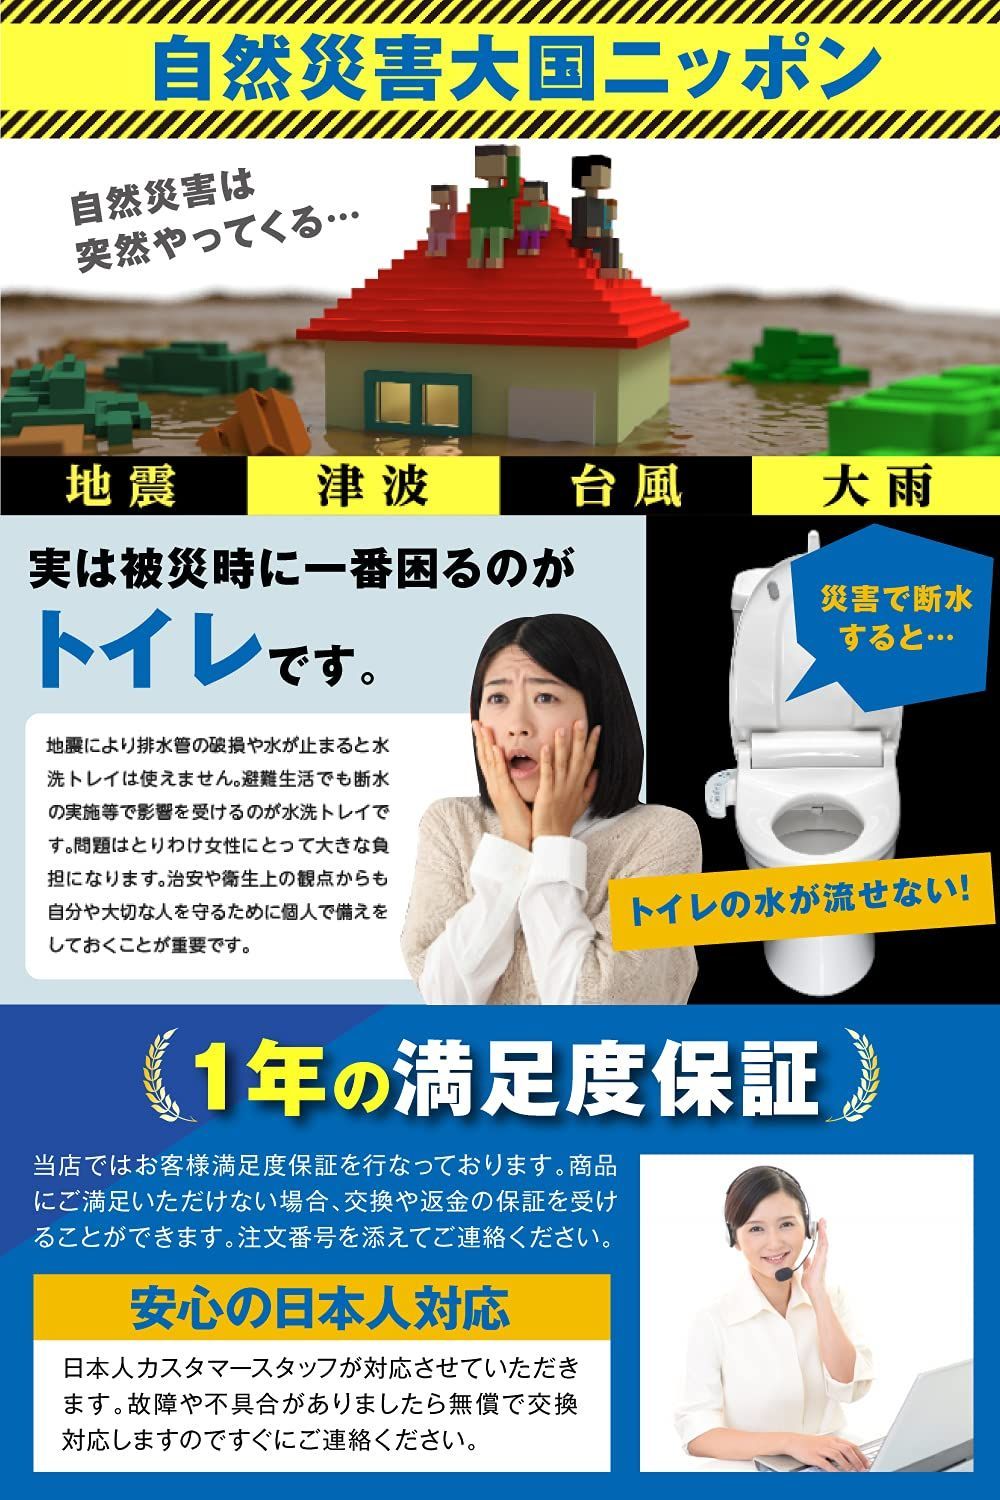 トイレの女神PREMIUM 簡易トイレ 携帯トイレ 防災トイレ【 日本製